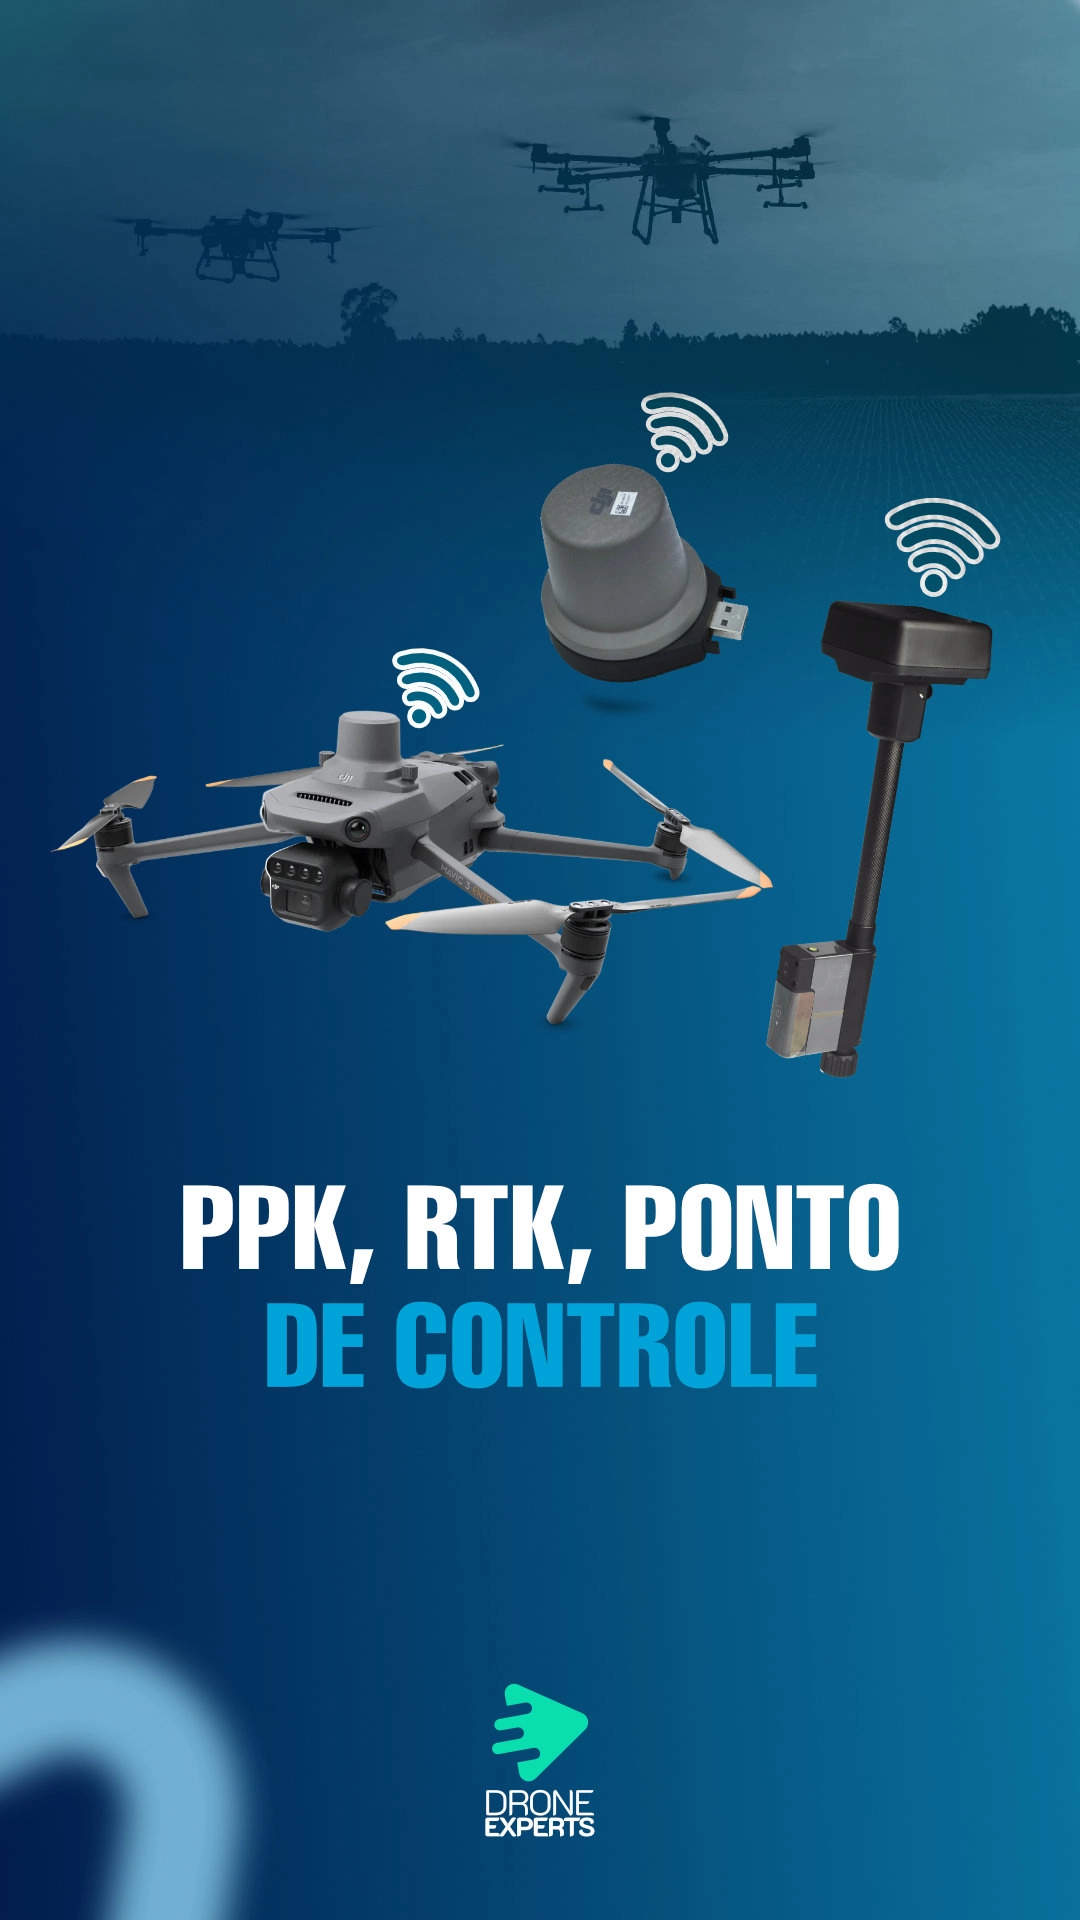 JORNADA DO PPK, MAPEAMENTO DE PRECISÃO COM DRONES